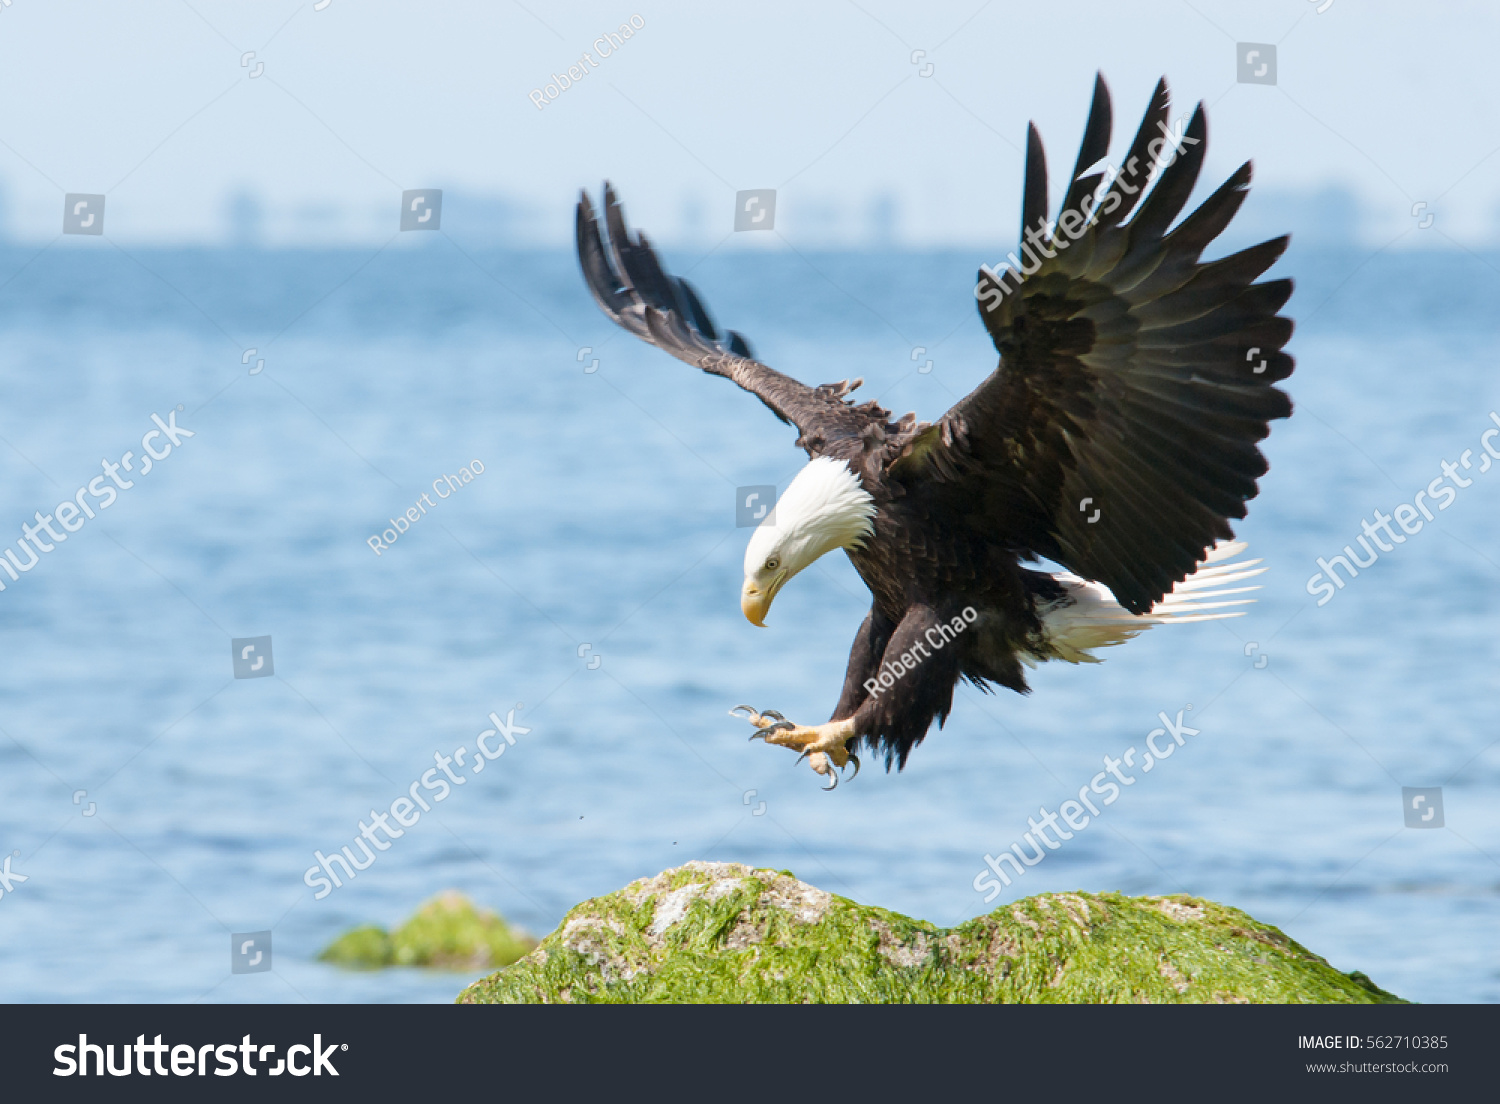 Bald eagle landing. #562710385